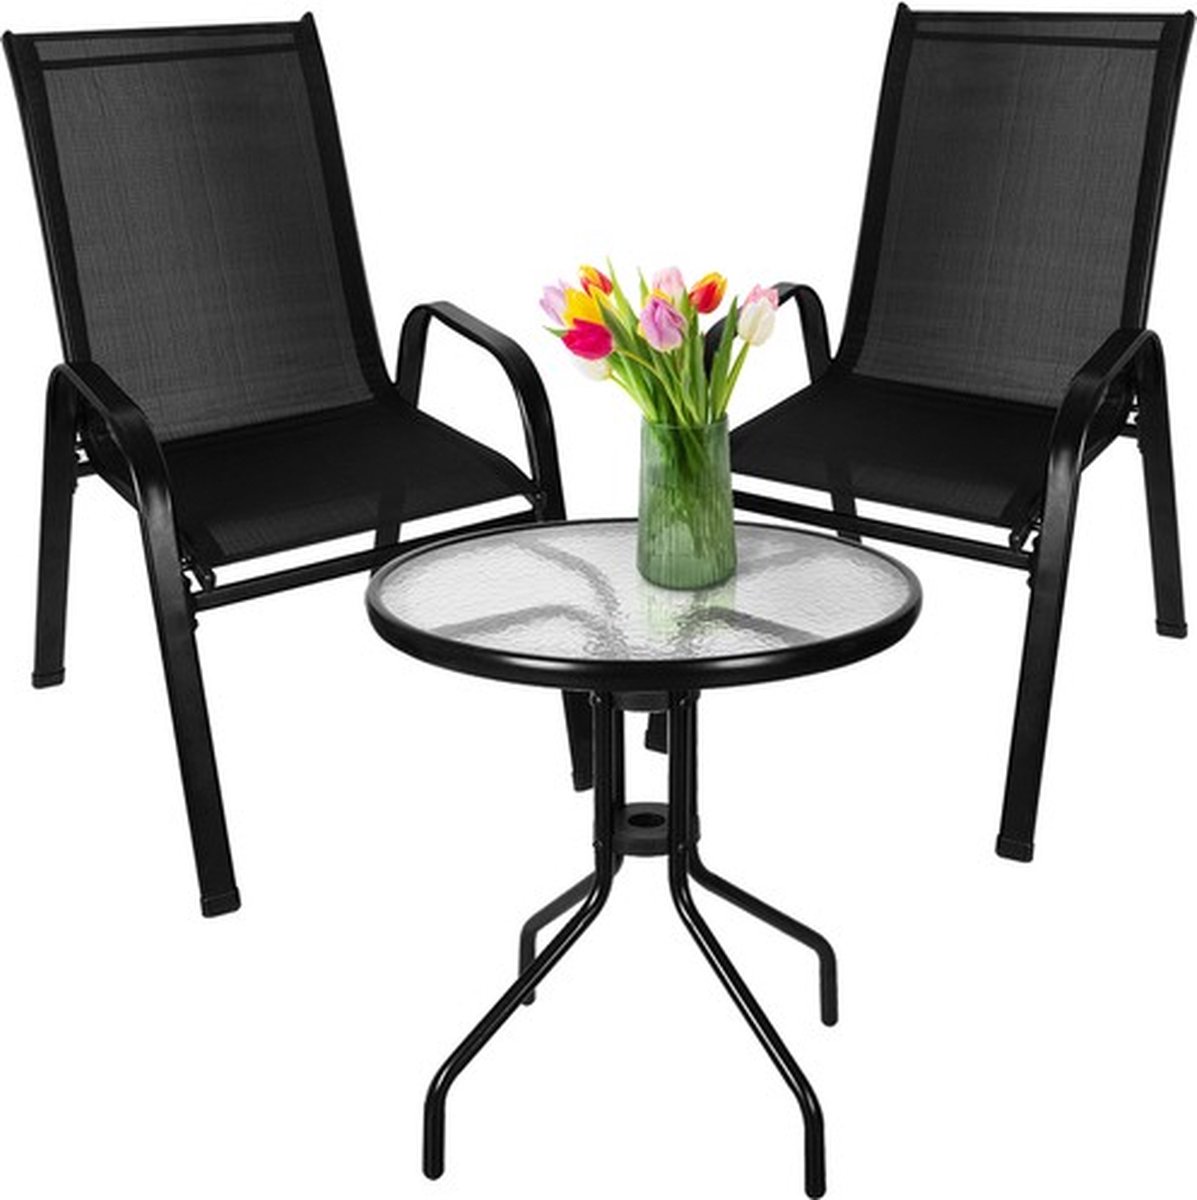 Borvat® | Tuinmeubelen Set met tafel | 1 tafel | 2 stoelen | 2 stalen stoelen met hoge rugleuning | 1 glazen ronde tafel